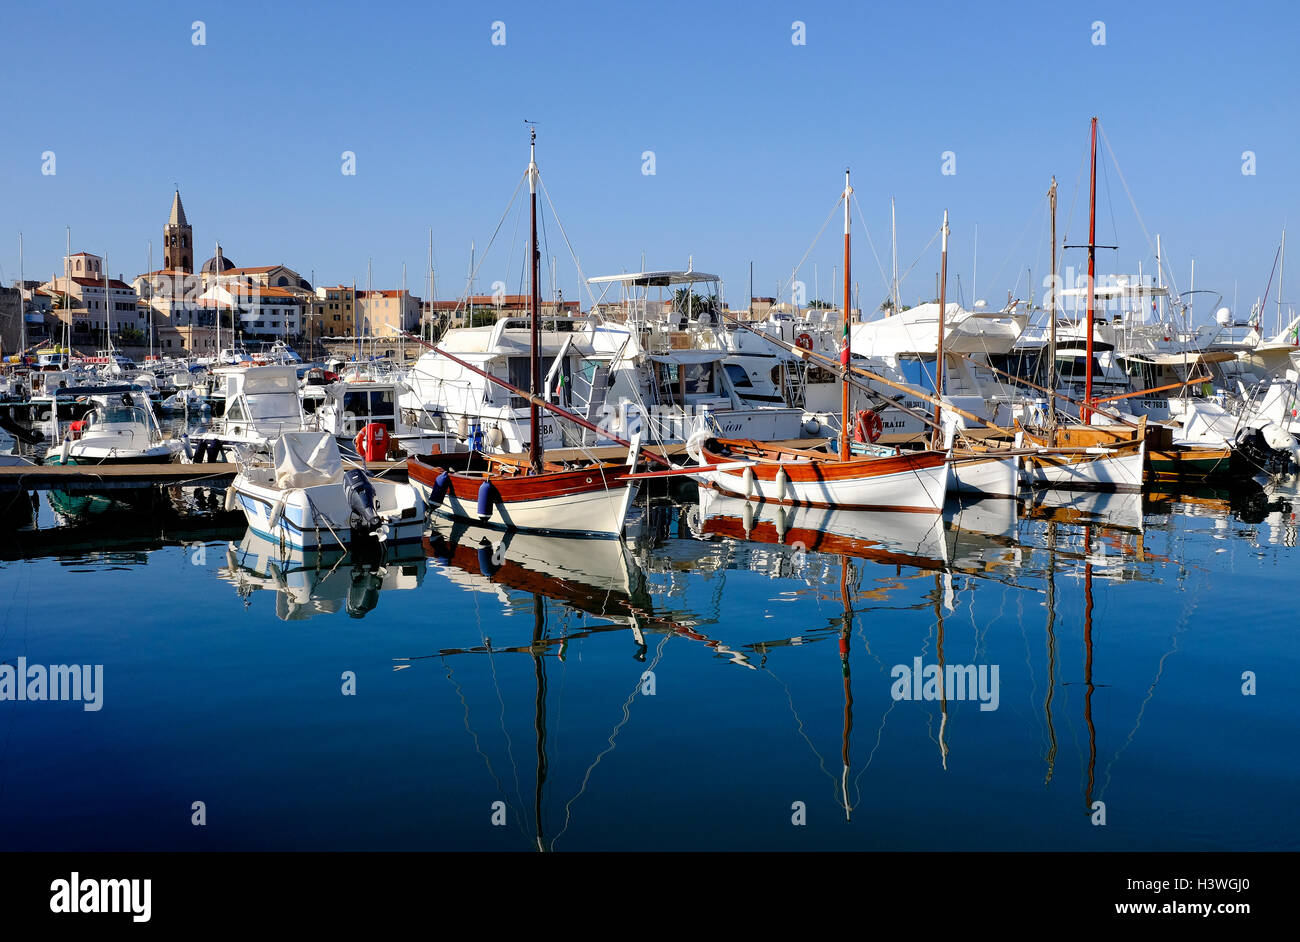 marina harbour in alghero, sardinia, italy Stock Photo